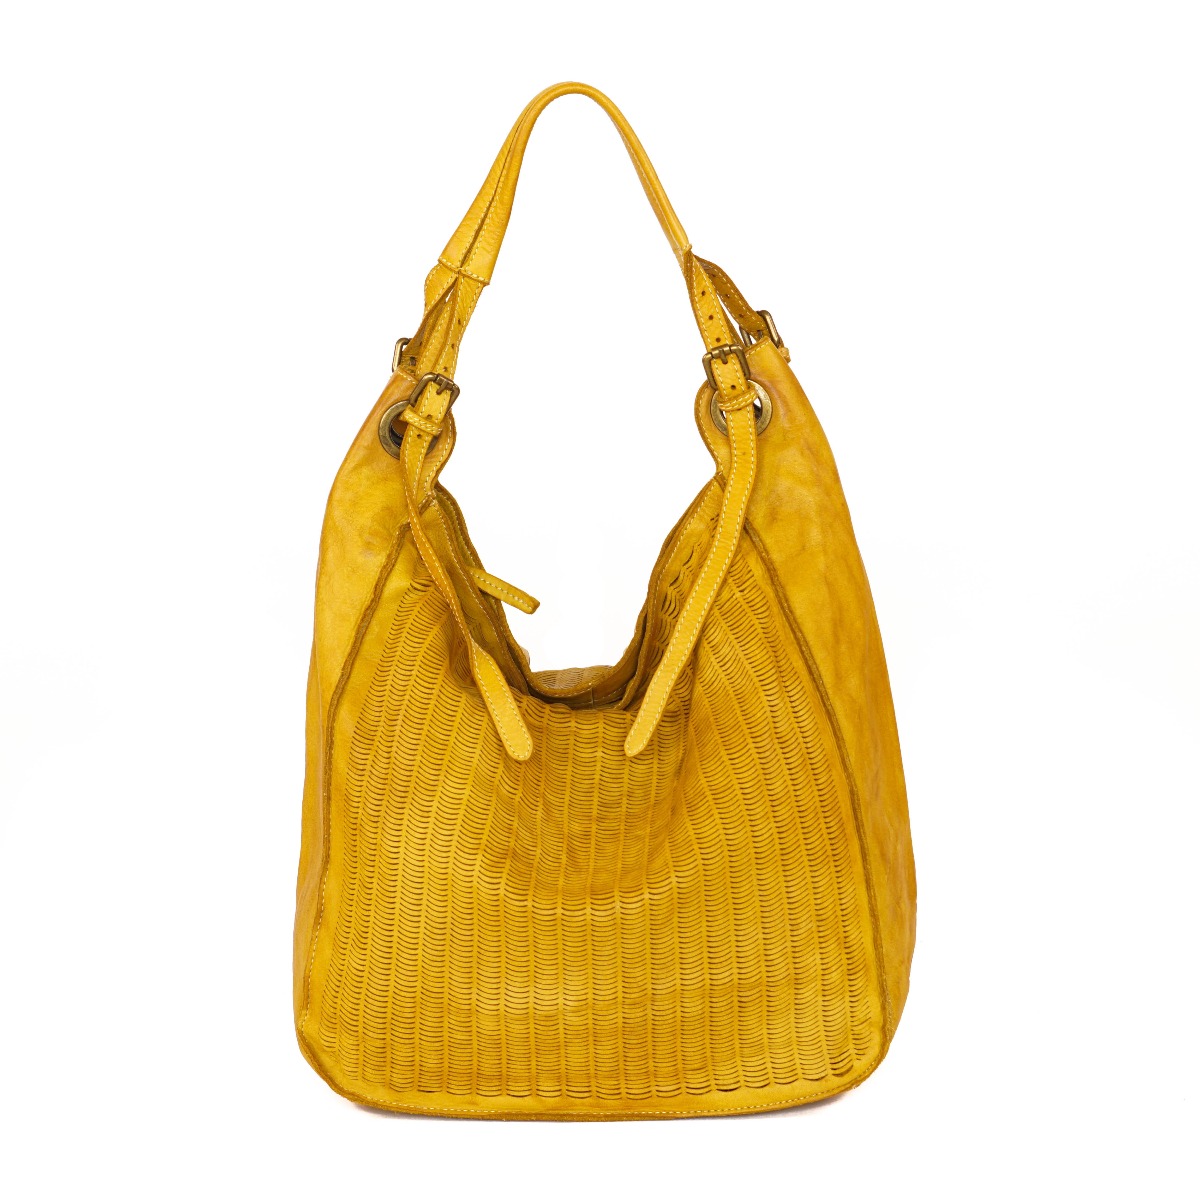 Big shoulder bag - yellow color